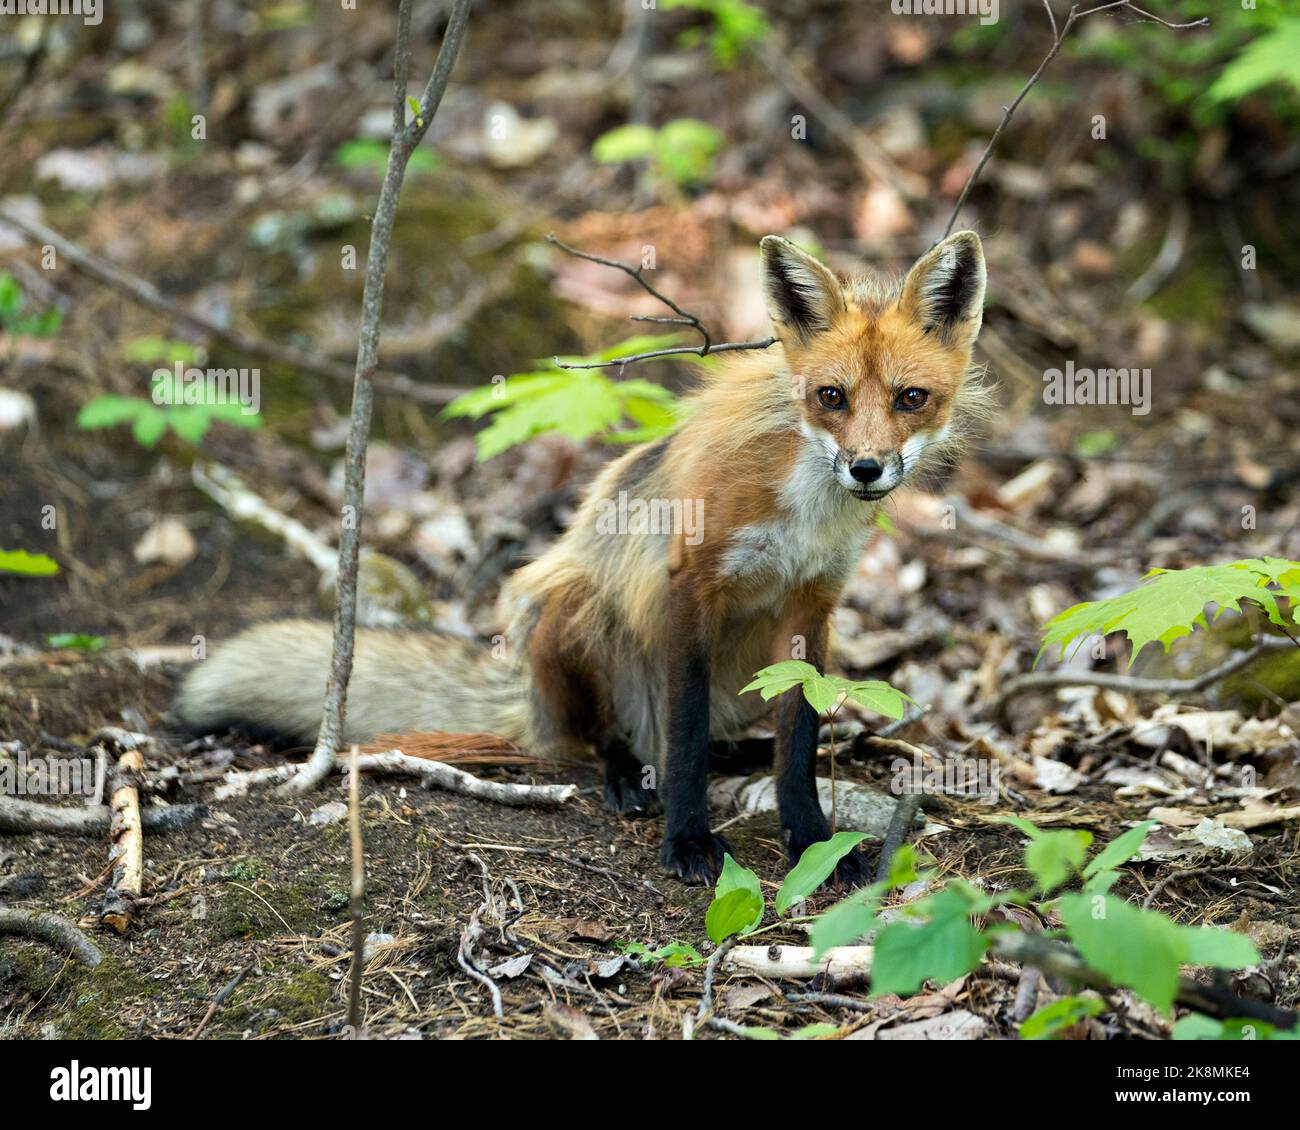 Profil de Red Fox en gros plan assis et regardant l'appareil photo avec un arrière-plan flou dans son environnement et son habitat. Image. Photo. Portrait. Fox image. Banque D'Images